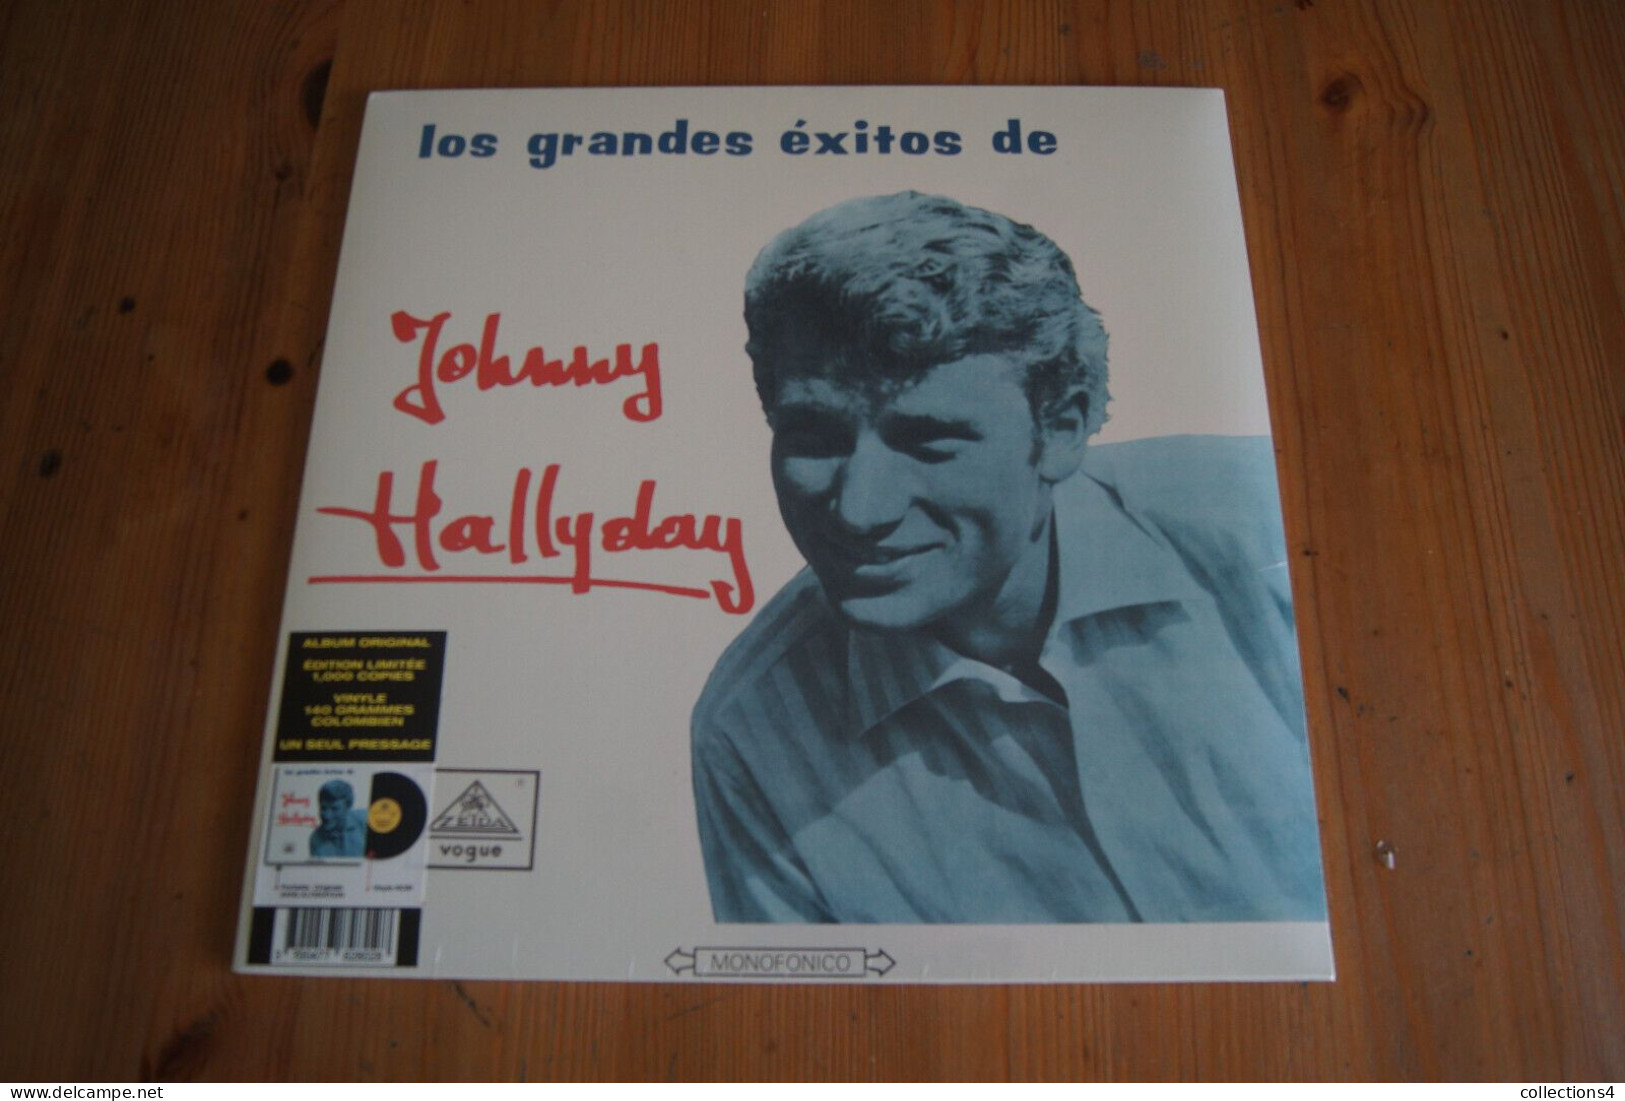 JOHNNY HALLYDAY LOS GRANDES EXITOS DE REEDITION LP COLOMBIEN SCELLE 1000 COPIES - Rock